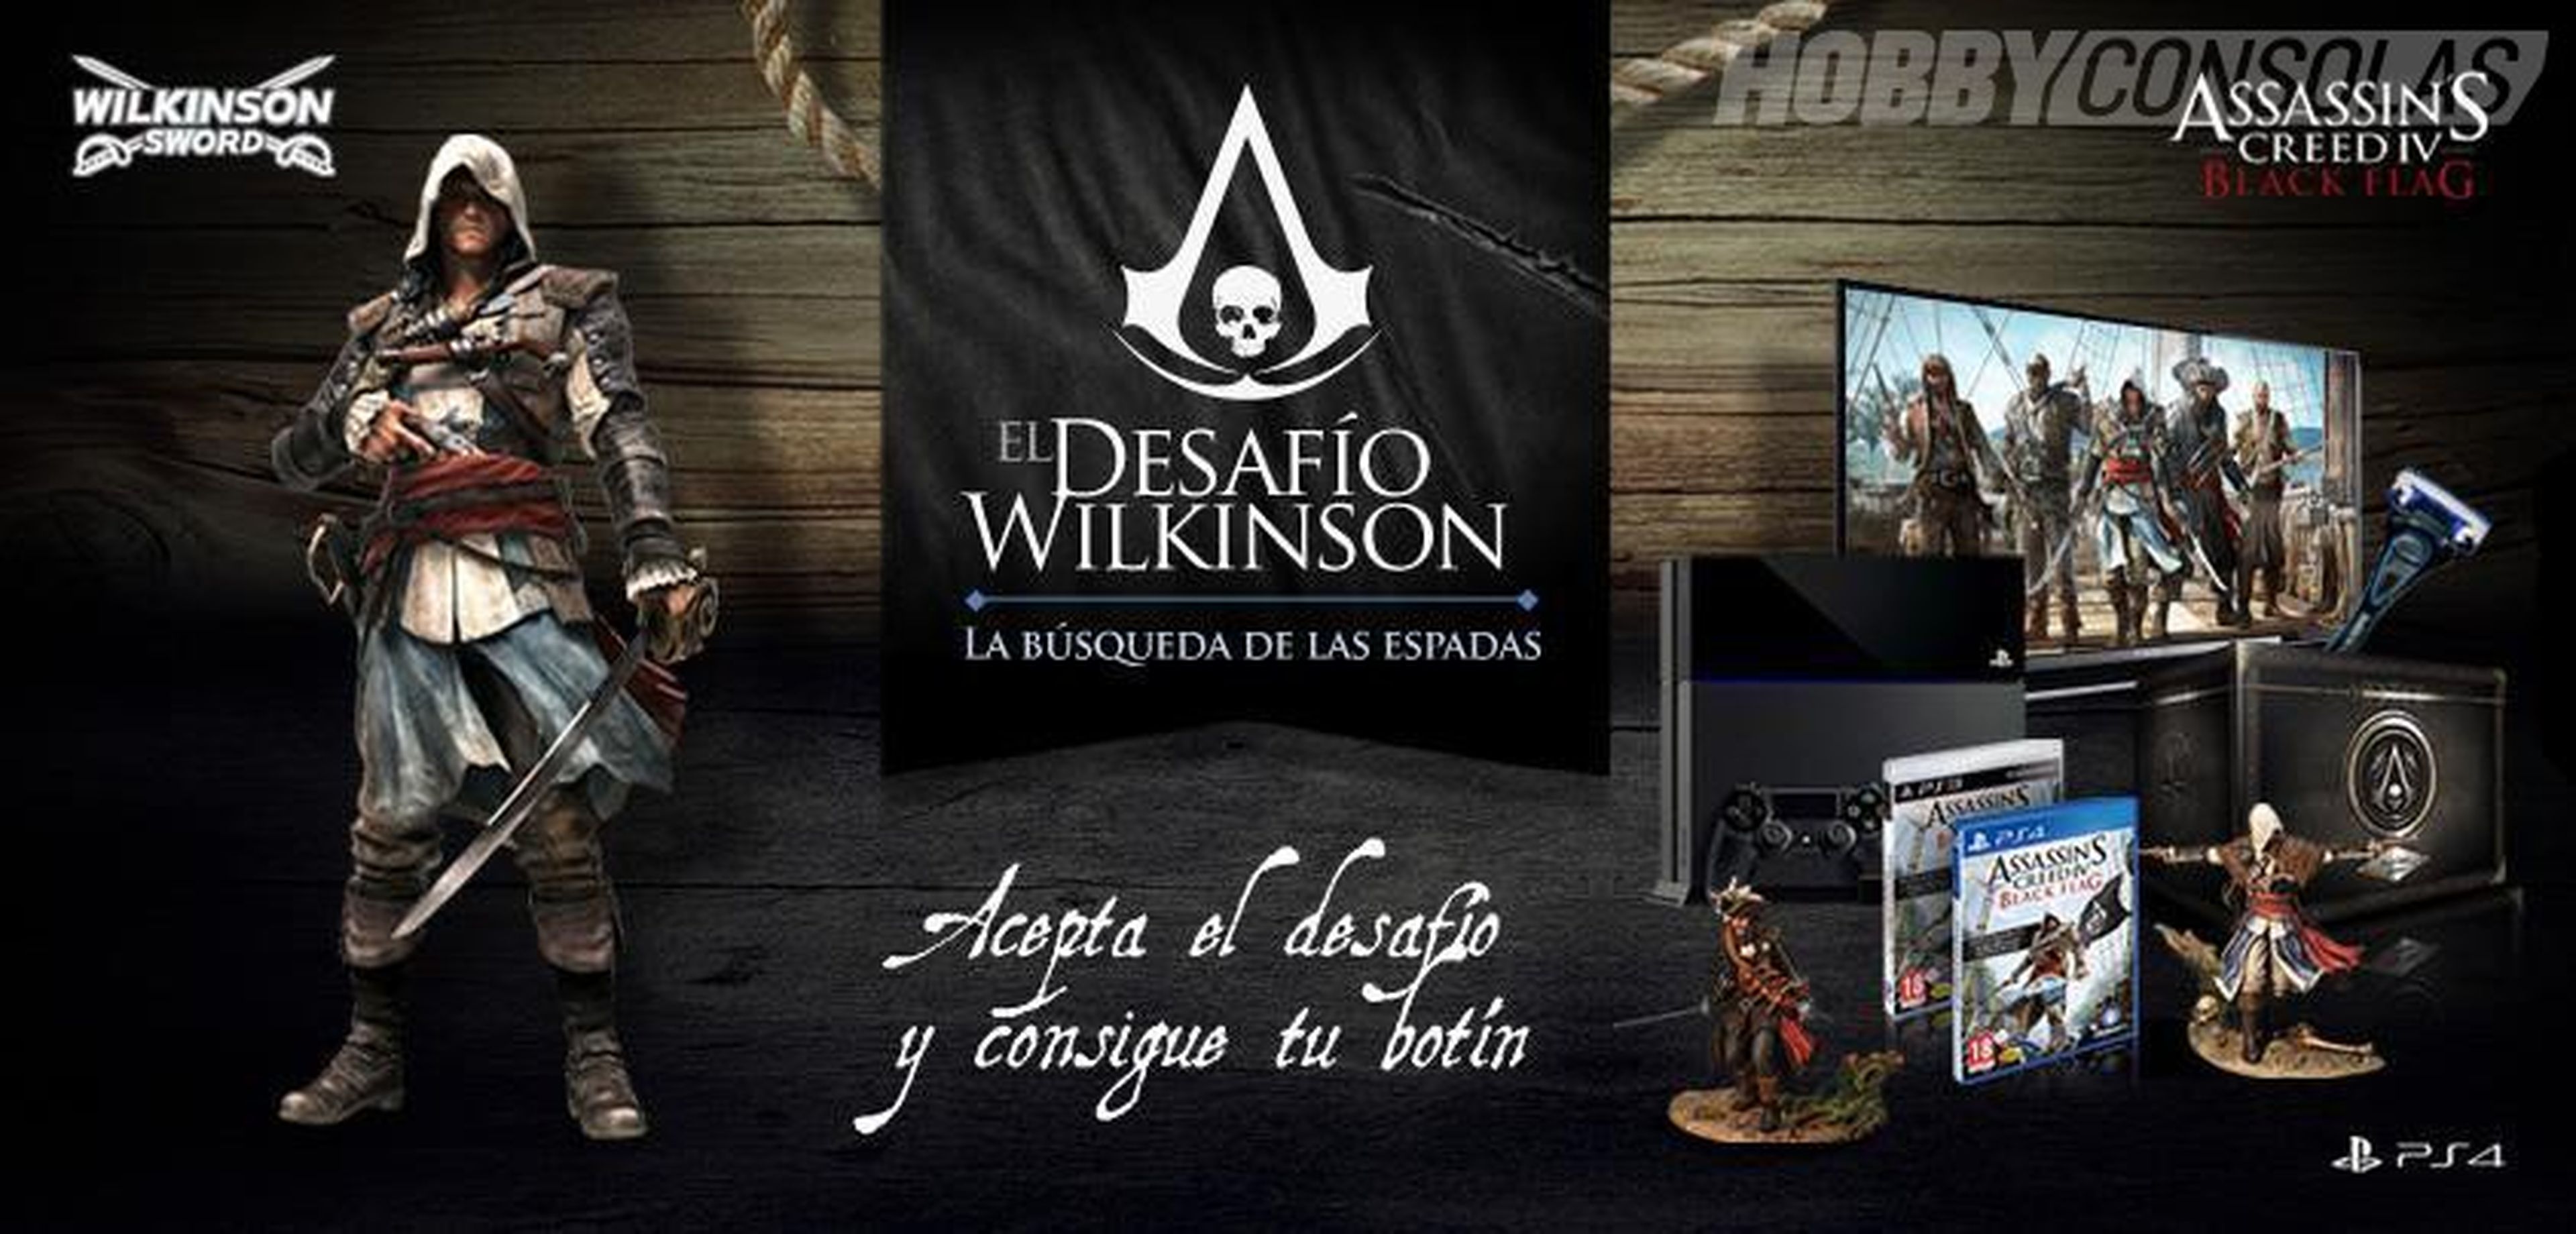 Concurso Assassin's Creed IV "Desafío Wilkinson"